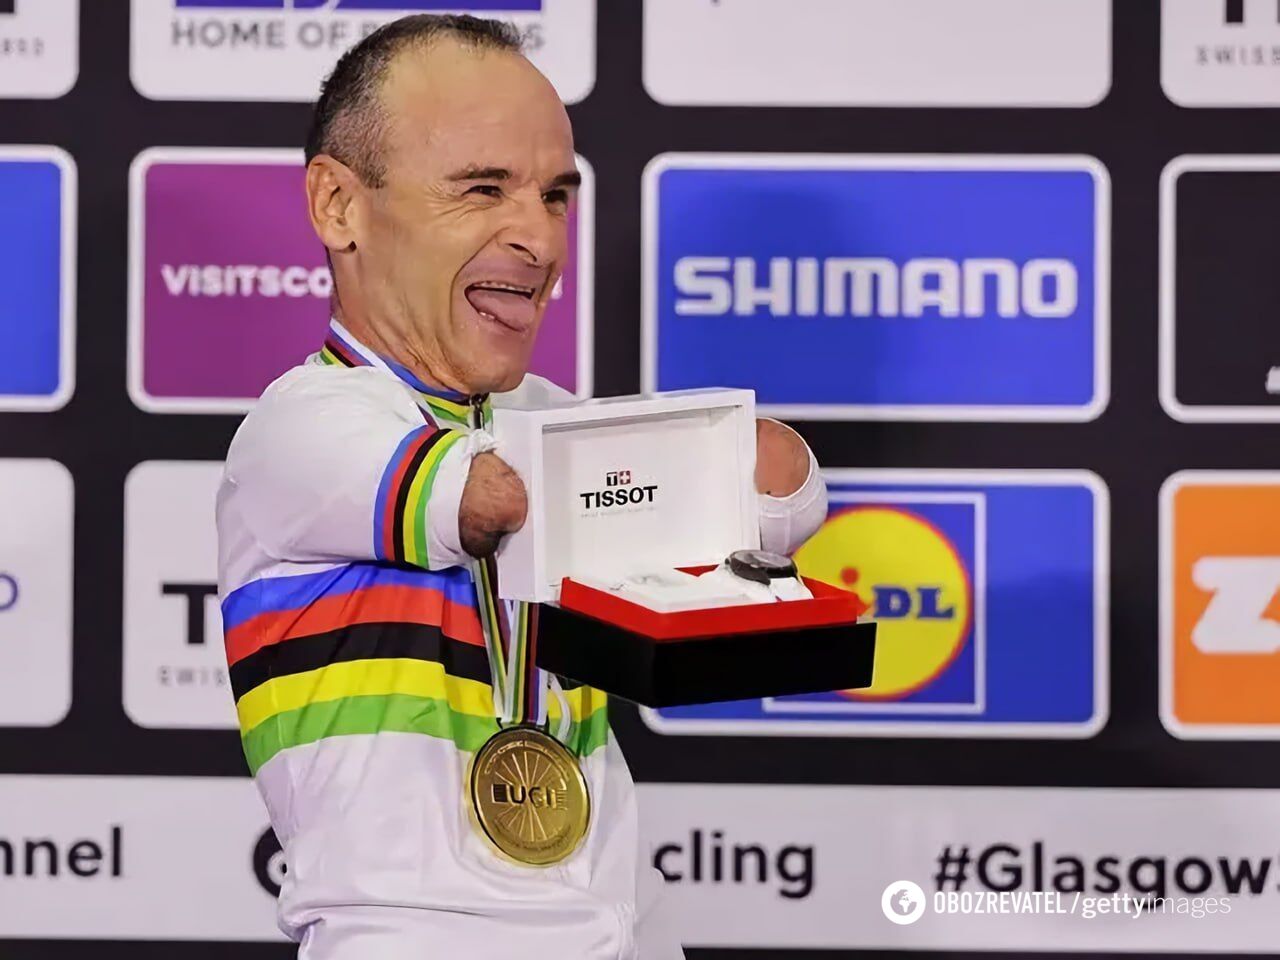 Безрукий велосипедист выиграл чемпионат мира. Его наградили наручными часами. Видео